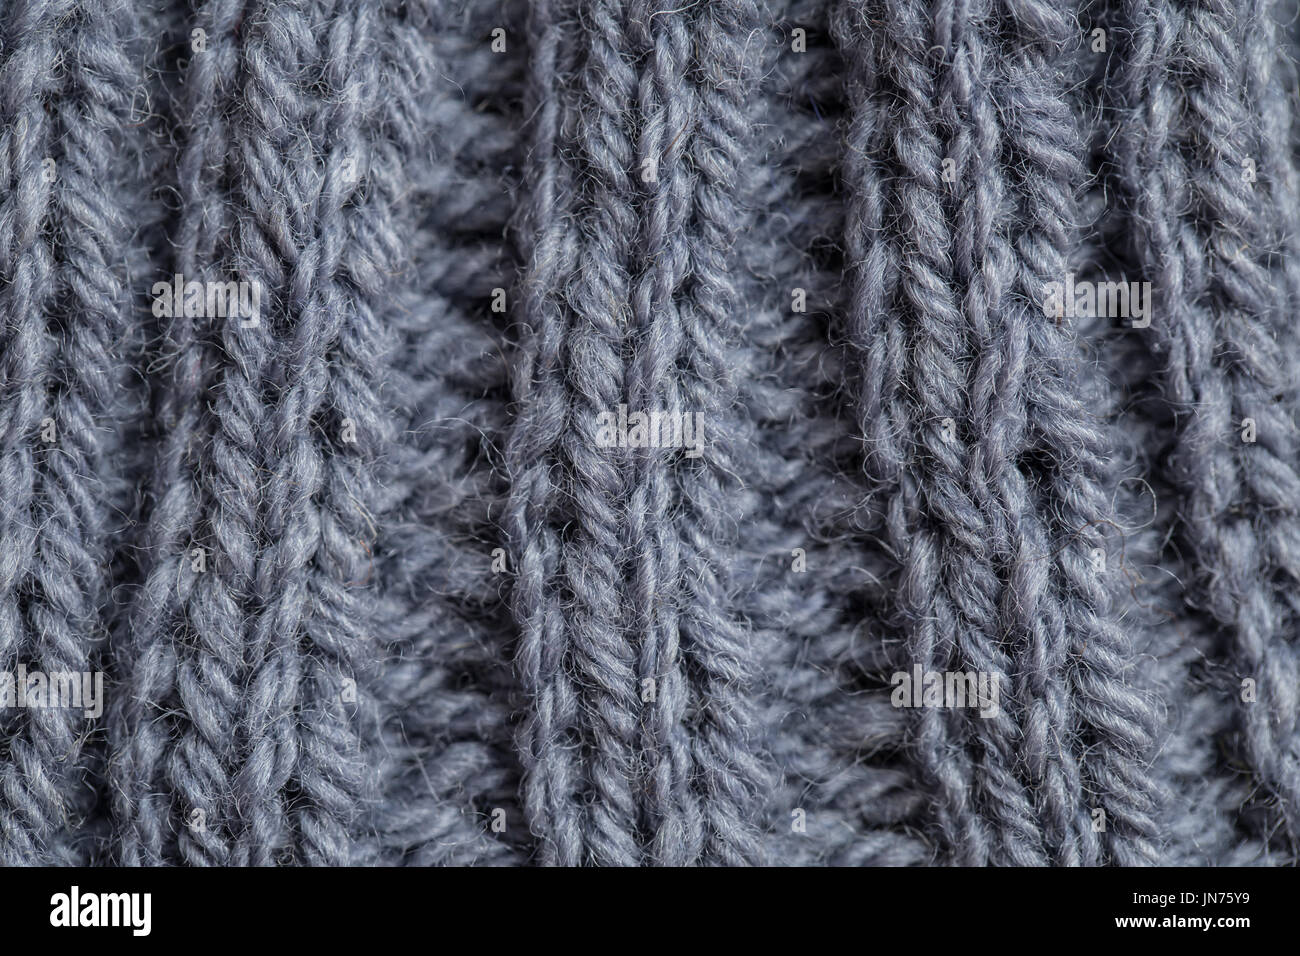 Eine schöne Nahaufnahme von einer Hand gestrickte warme und weiche Wolle Muster. Weiche Socken oder Schal aus Naturwolle. Bunte Muster. Stockfoto